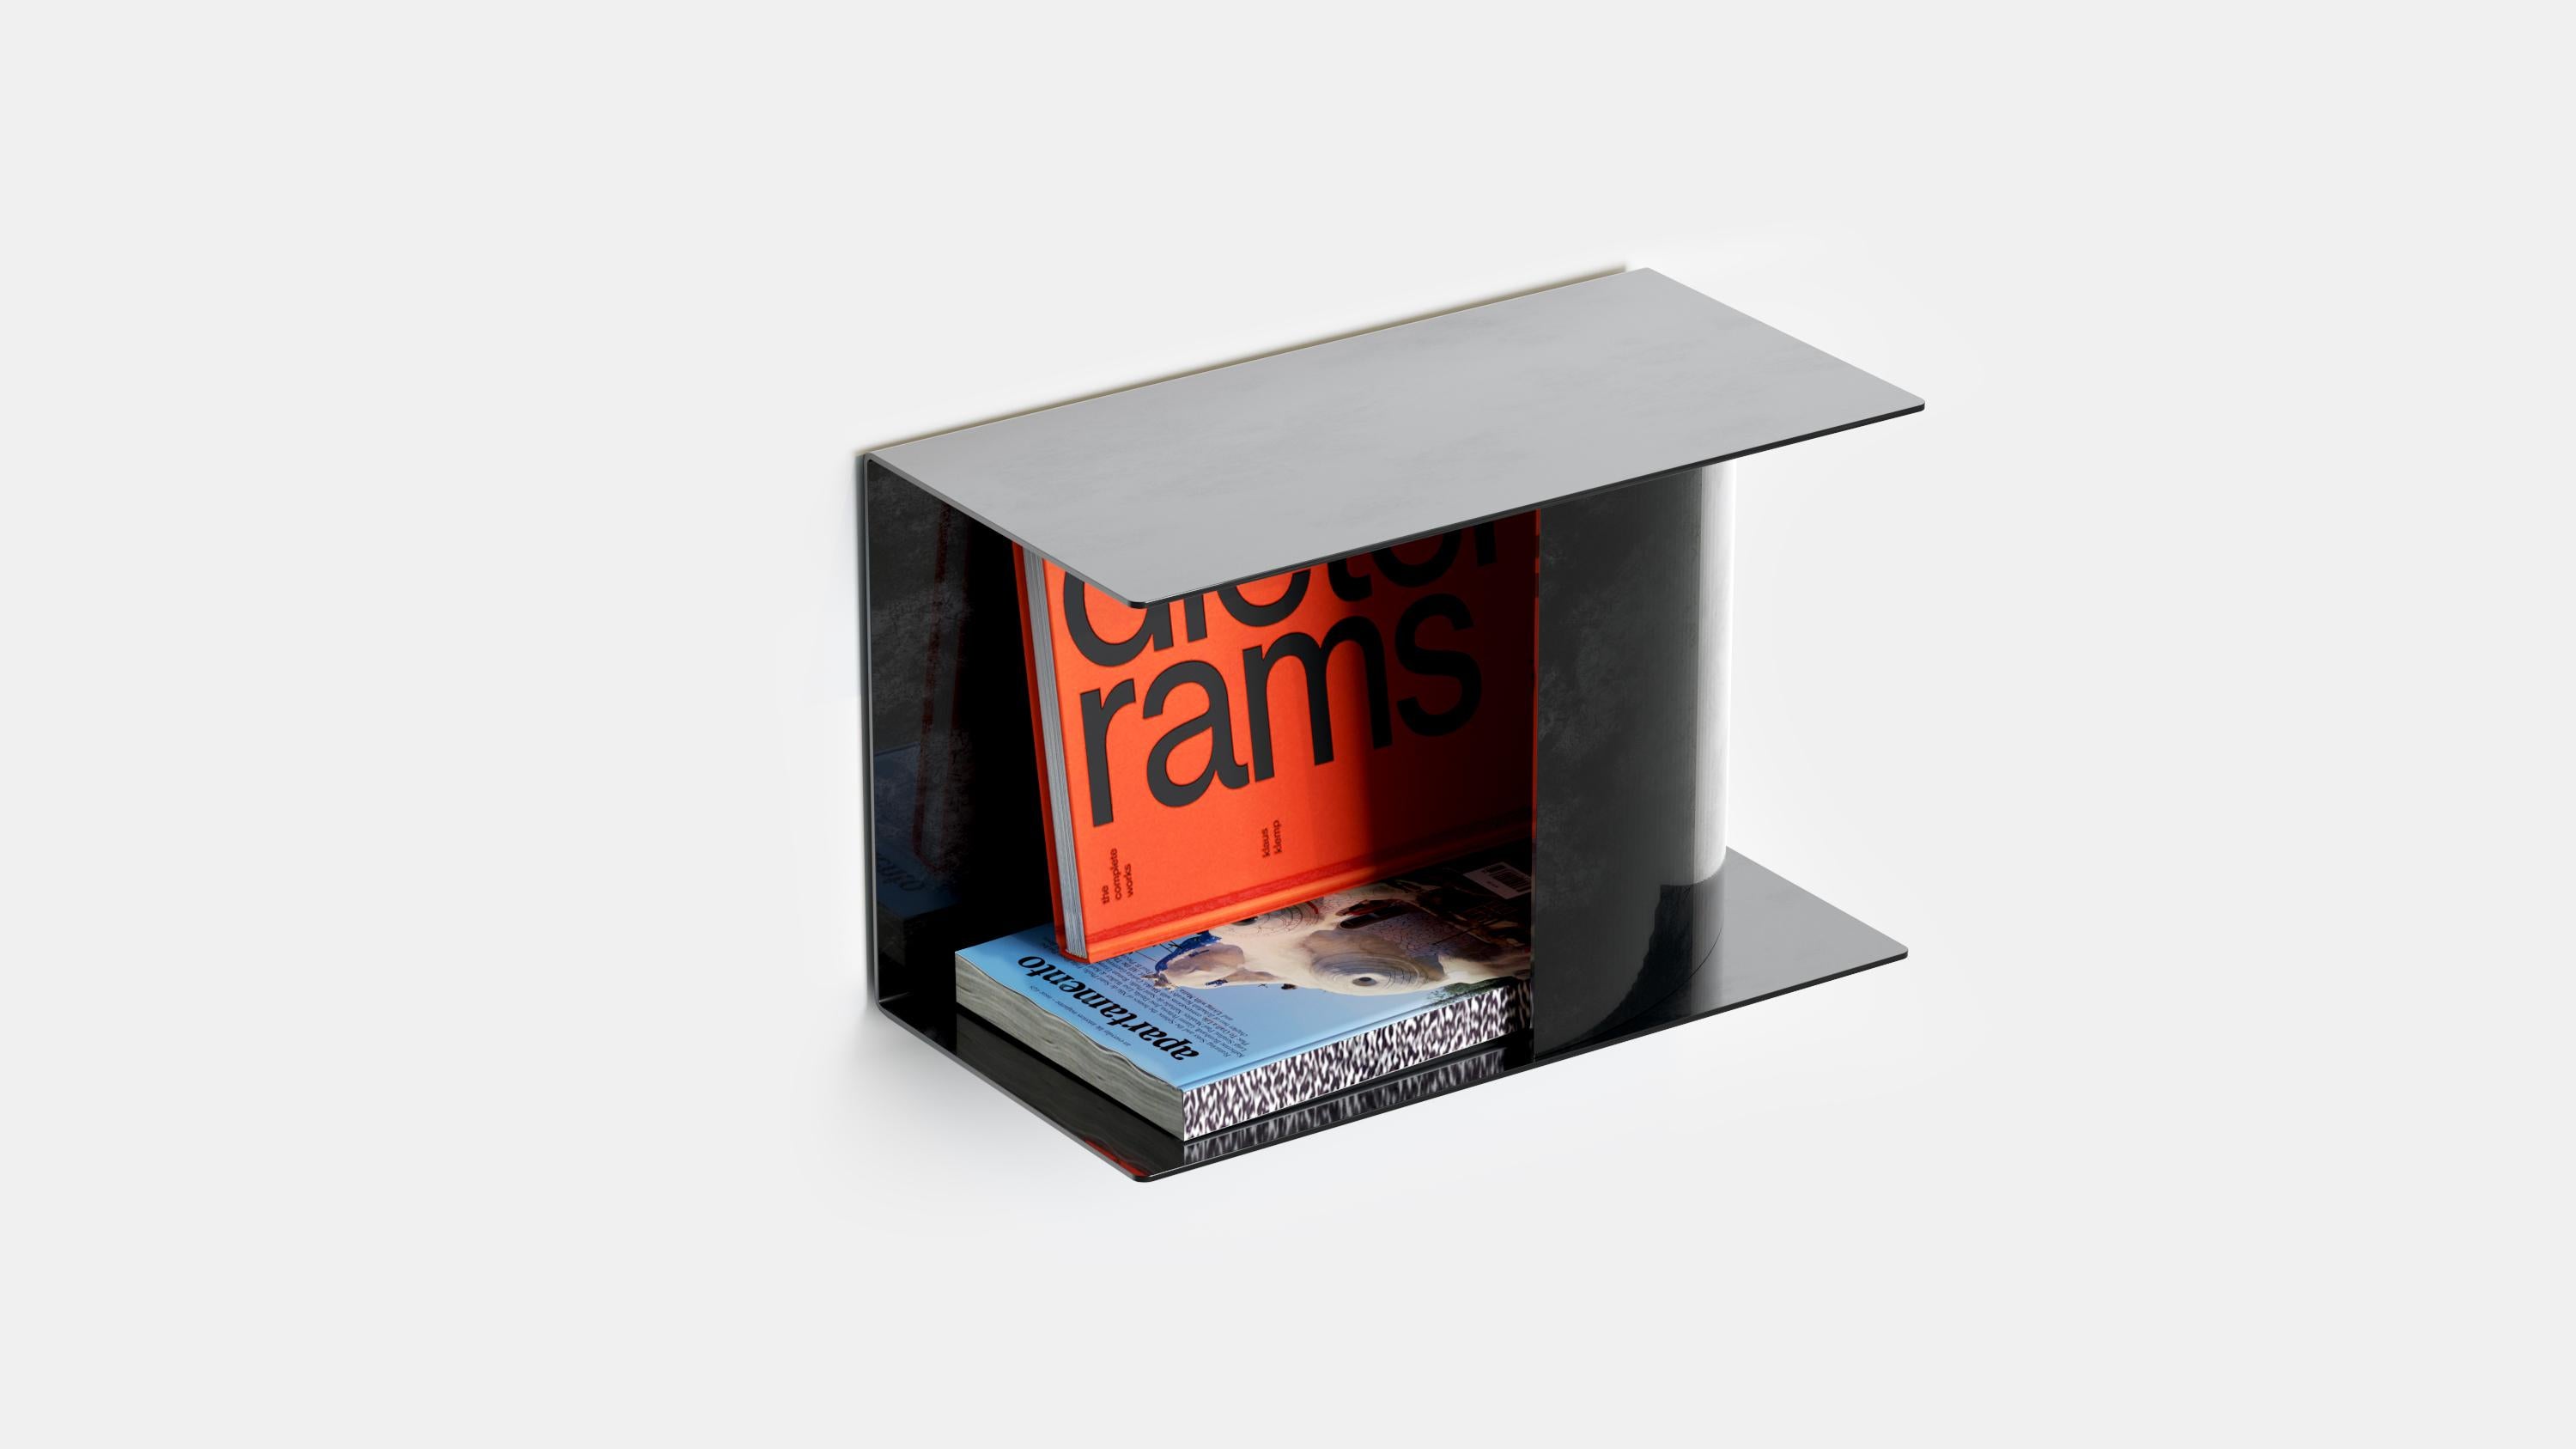 Der DREAM Nachttisch ist ein außergewöhnliches Möbelstück, das aus pulverbeschichtetem Stahl gefertigt ist. Er kann auf beiden Seiten des Bettes aufgestellt werden und bietet Platz für Bücher, Zeitschriften und das Telefon. Mit ihrer faszinierenden,